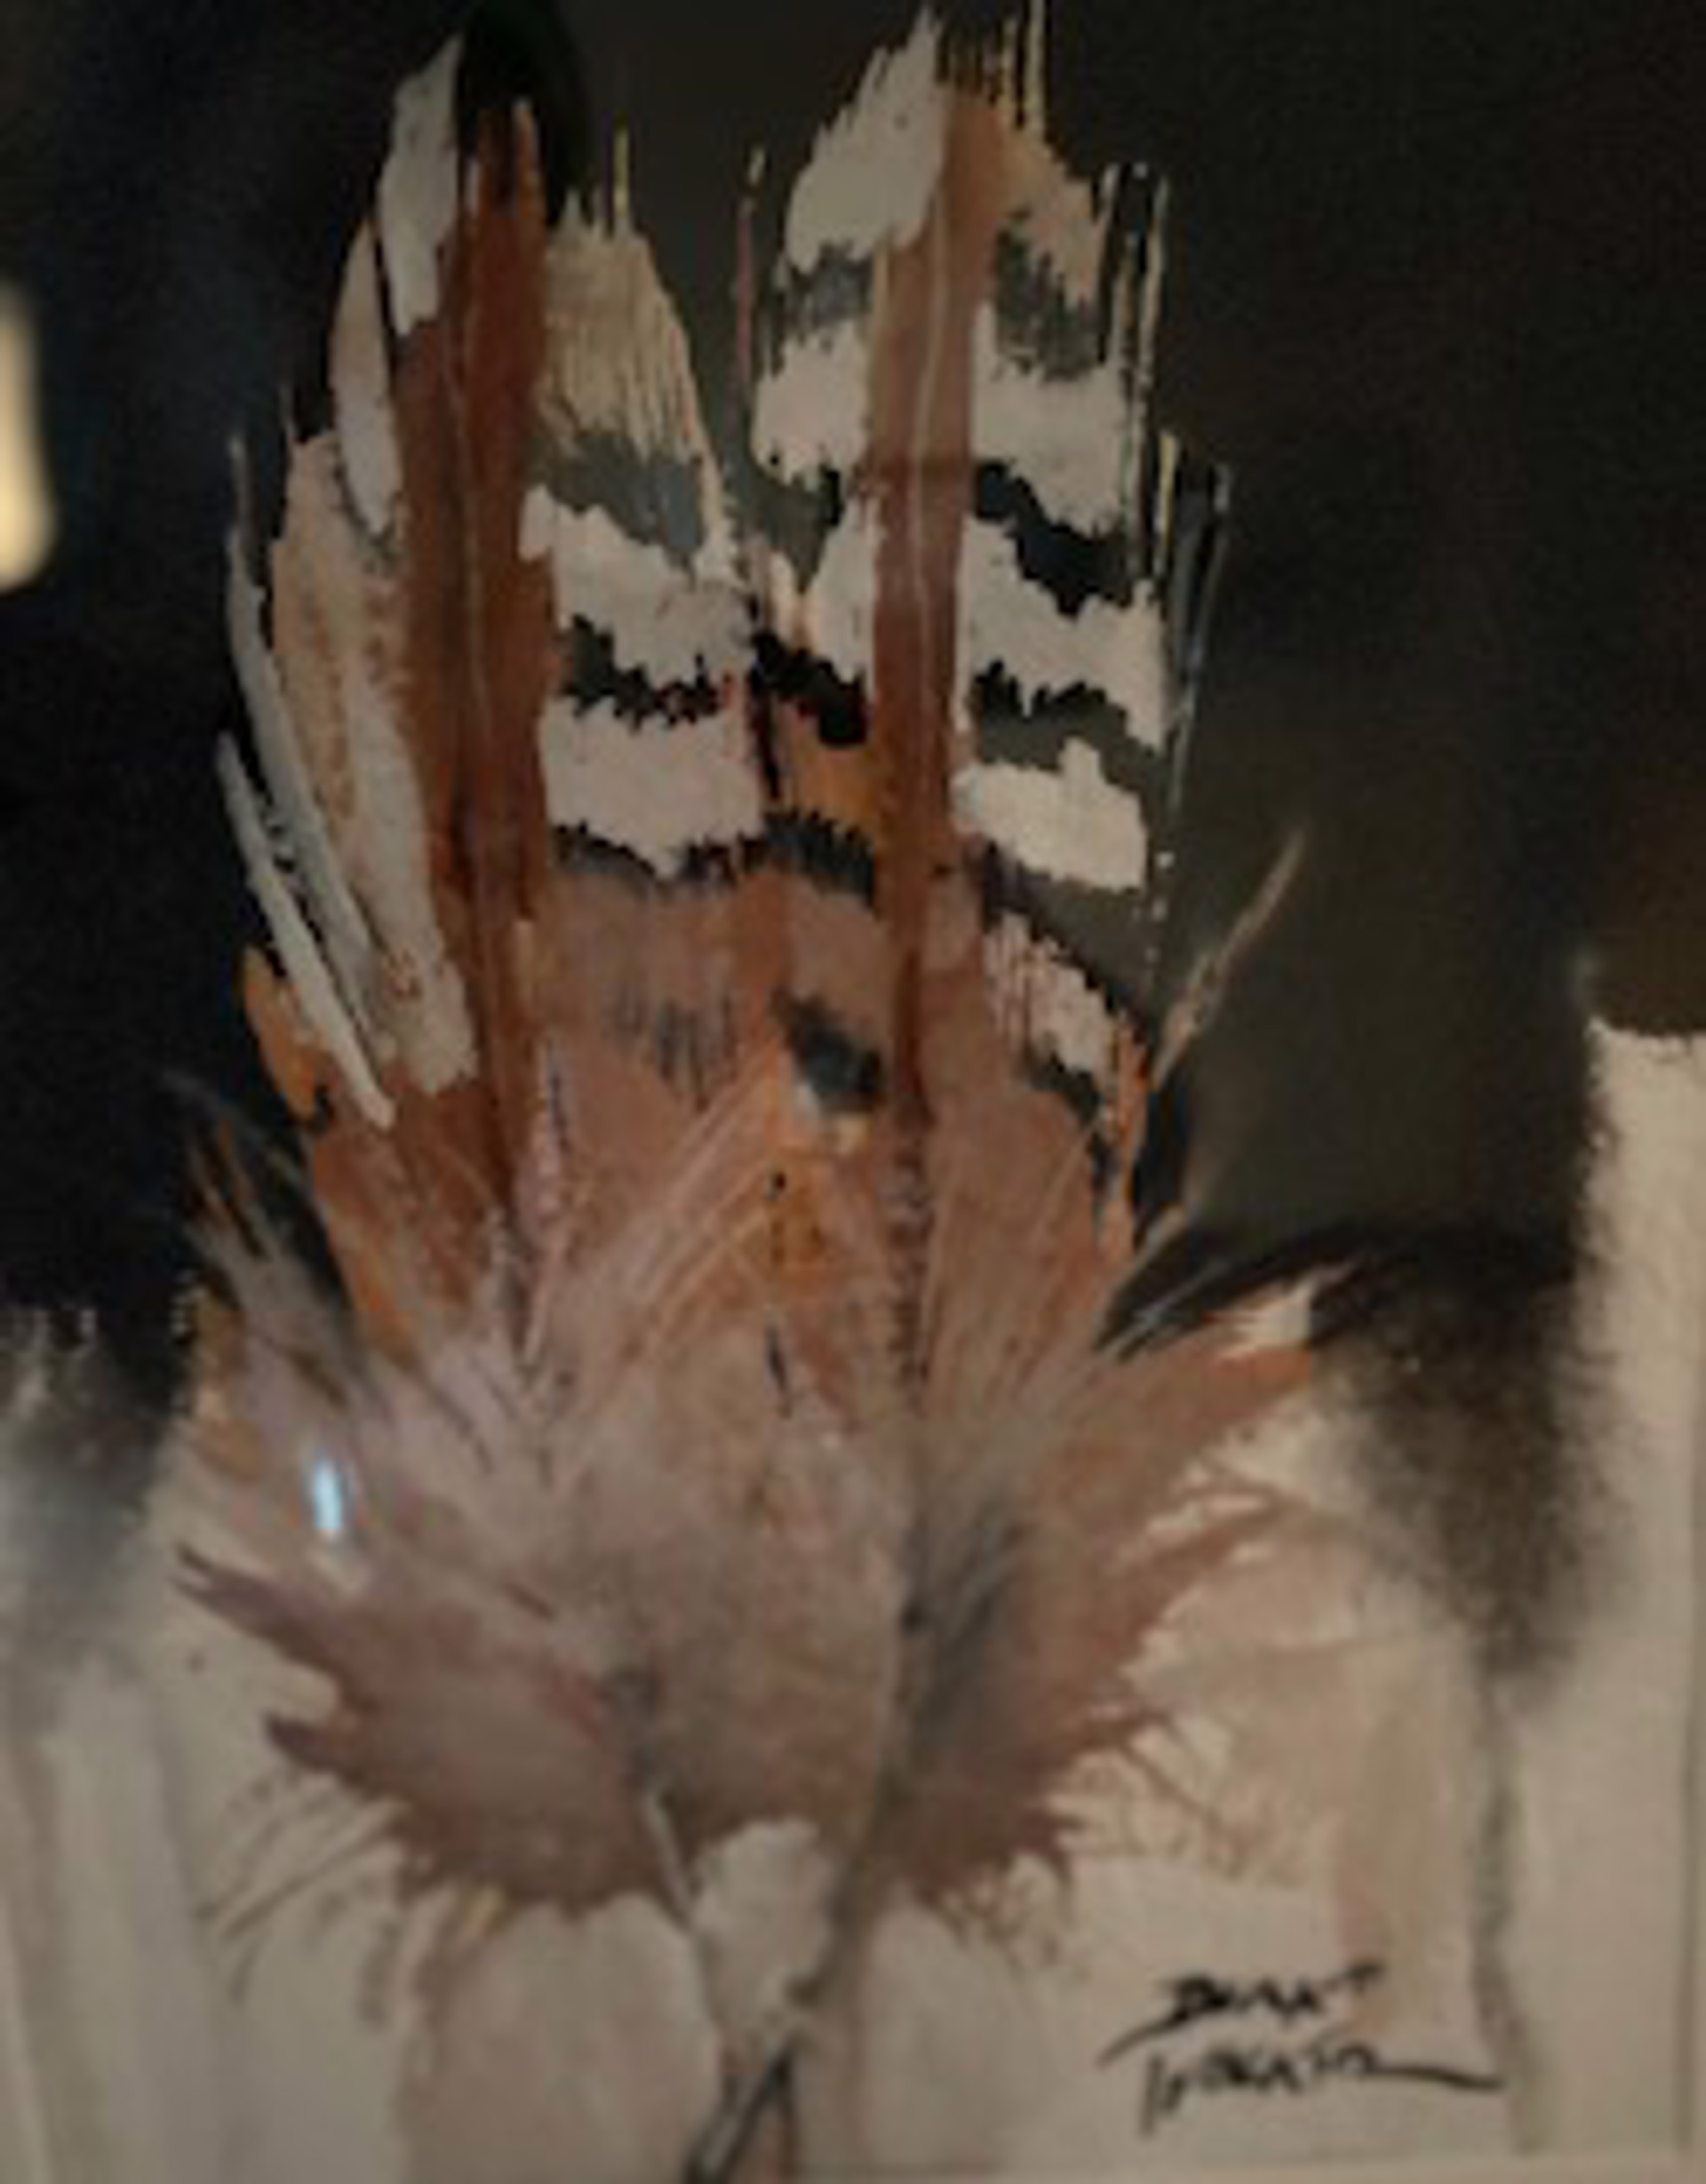 Pair of Pheasant Feathers by Dirk Walker